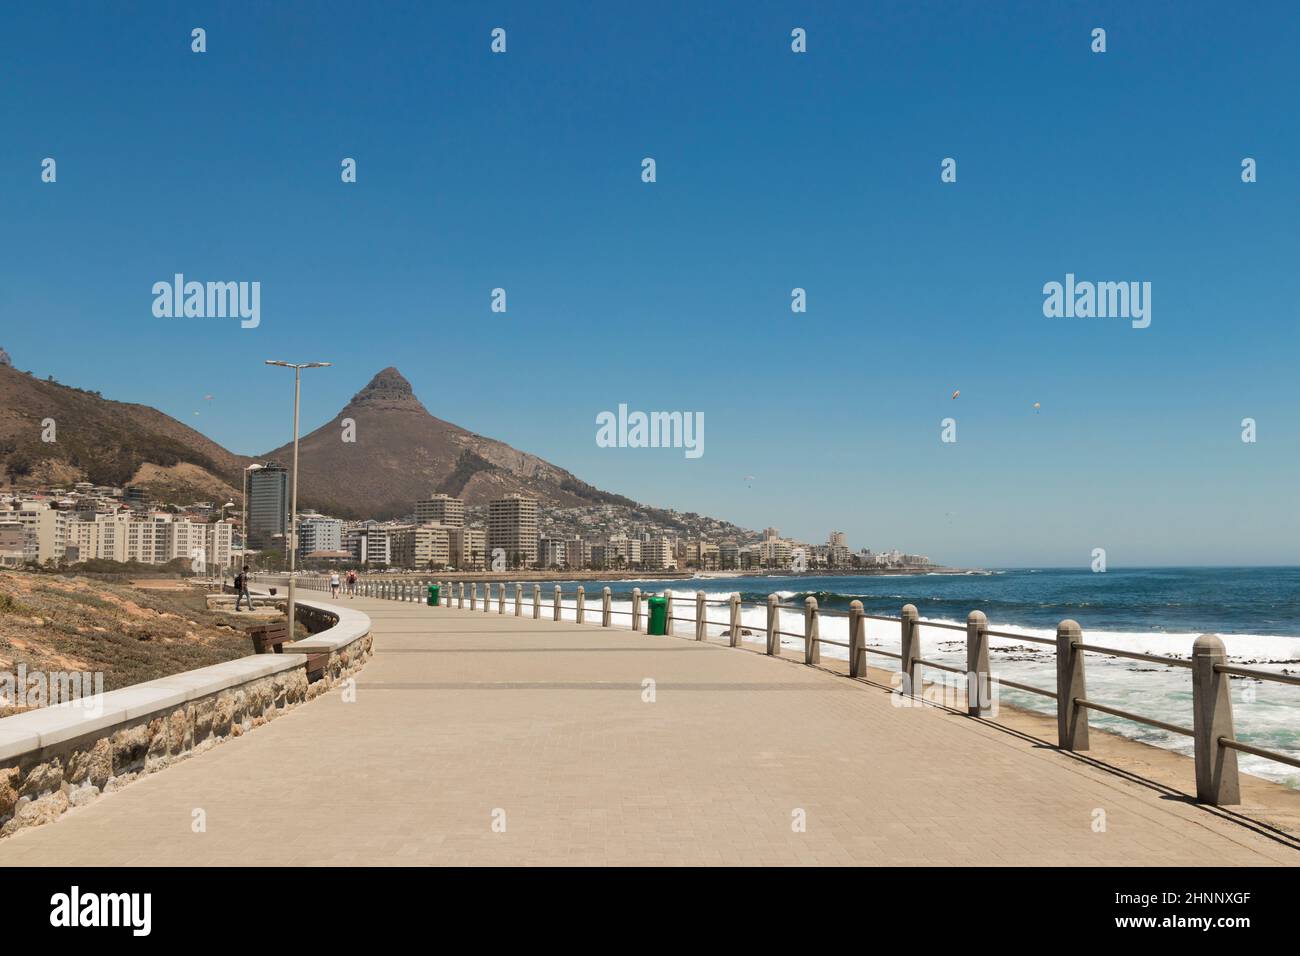 Montagnes, hôtels Sea point, promenade de la plage le Cap Afrique du Sud. Banque D'Images